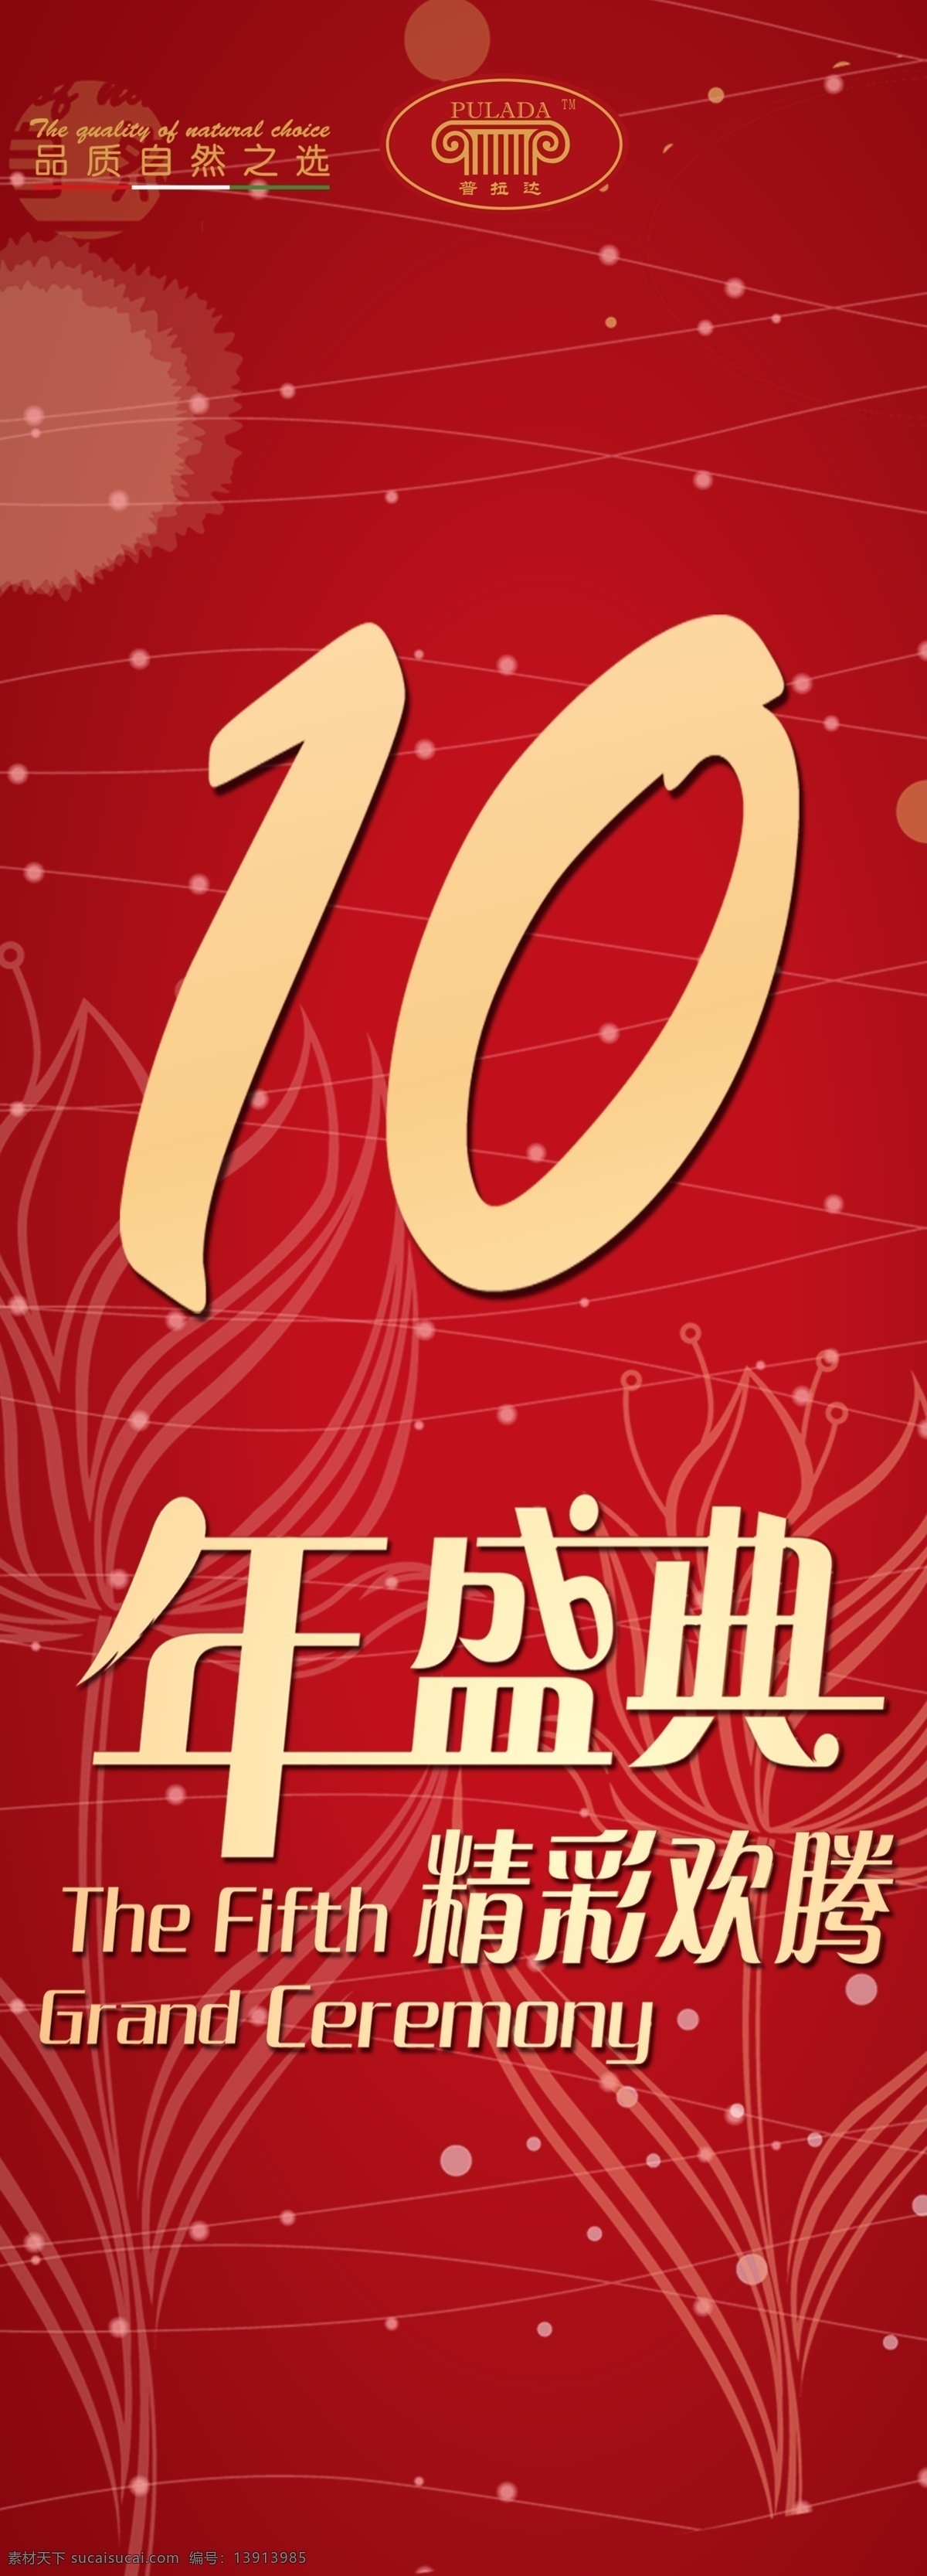 10年盛典 十年盛典 红色背景 红色底纹 红色刊板背景 周年庆 开业庆典 庆典开业